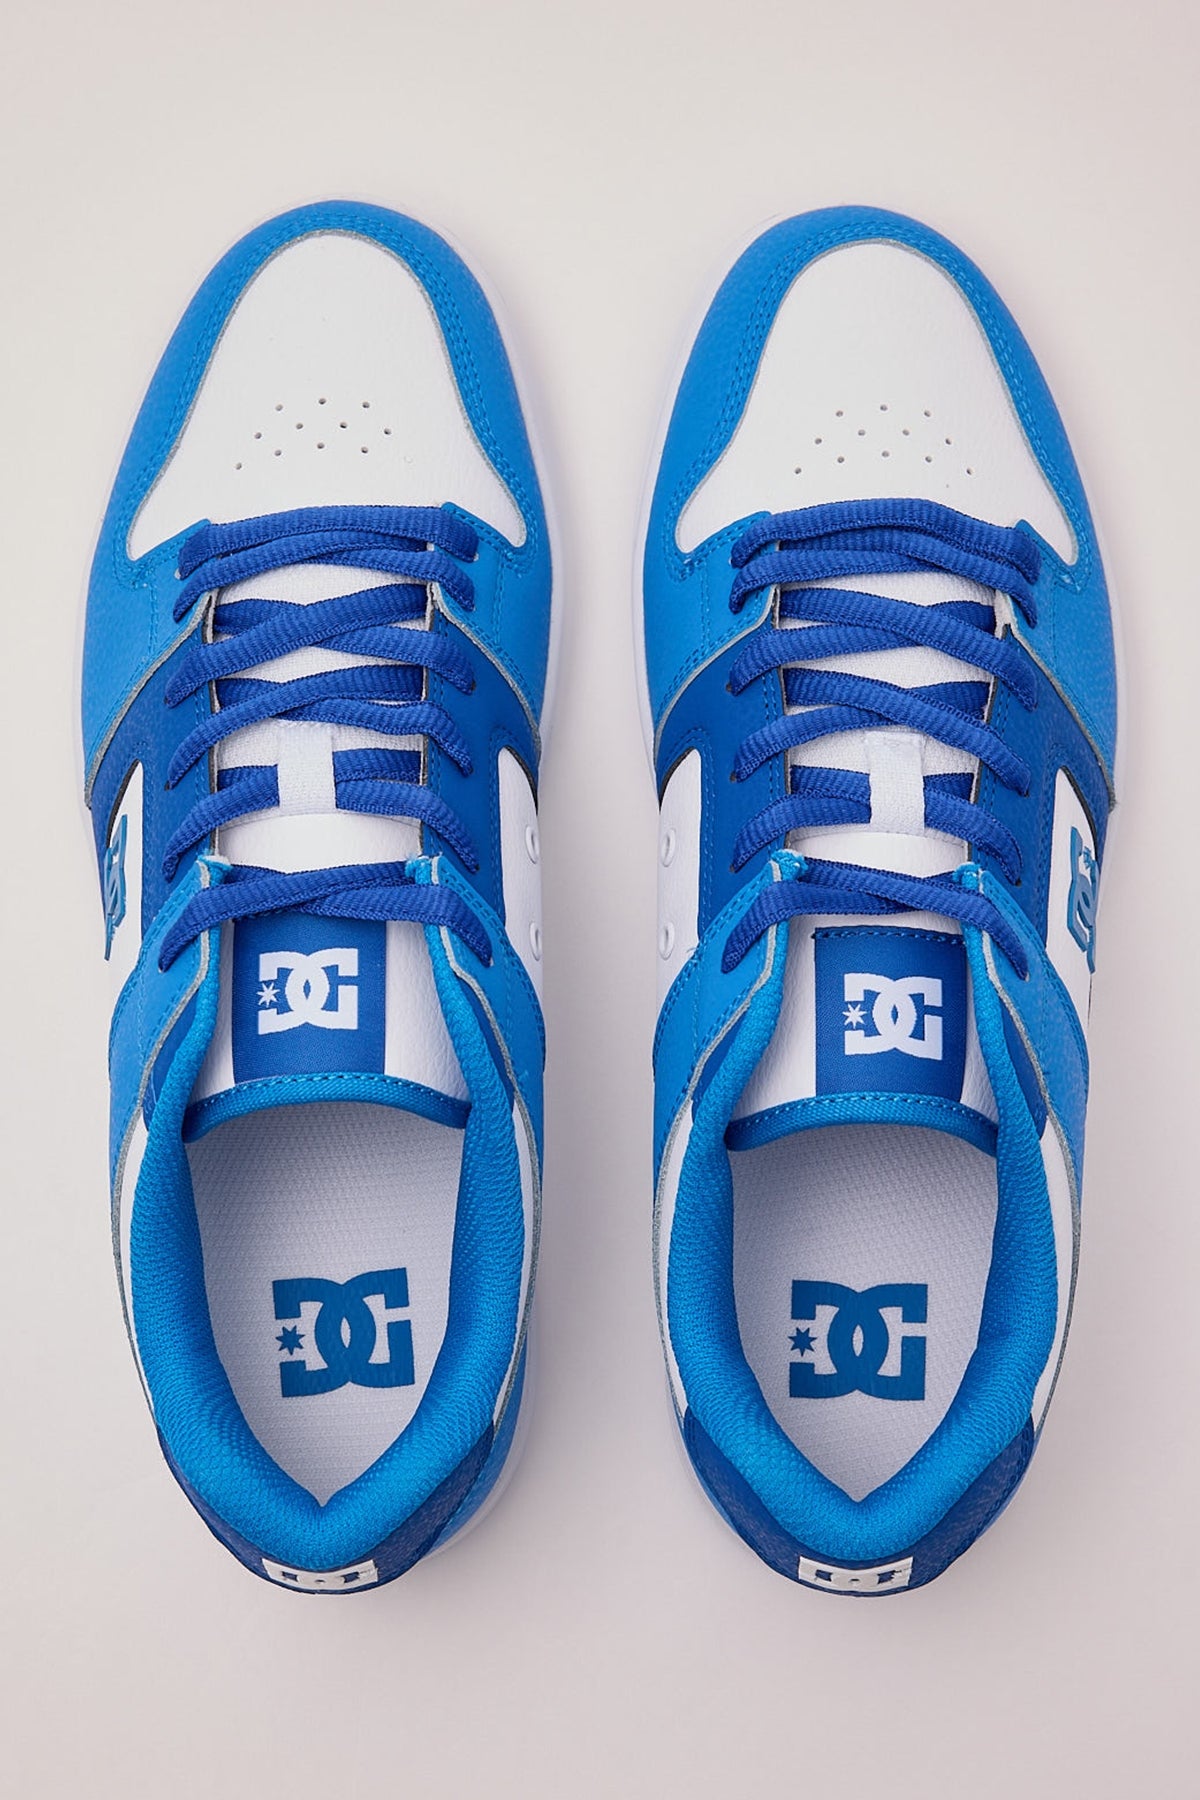 Dc Shoes Manteca 4 Blue/White